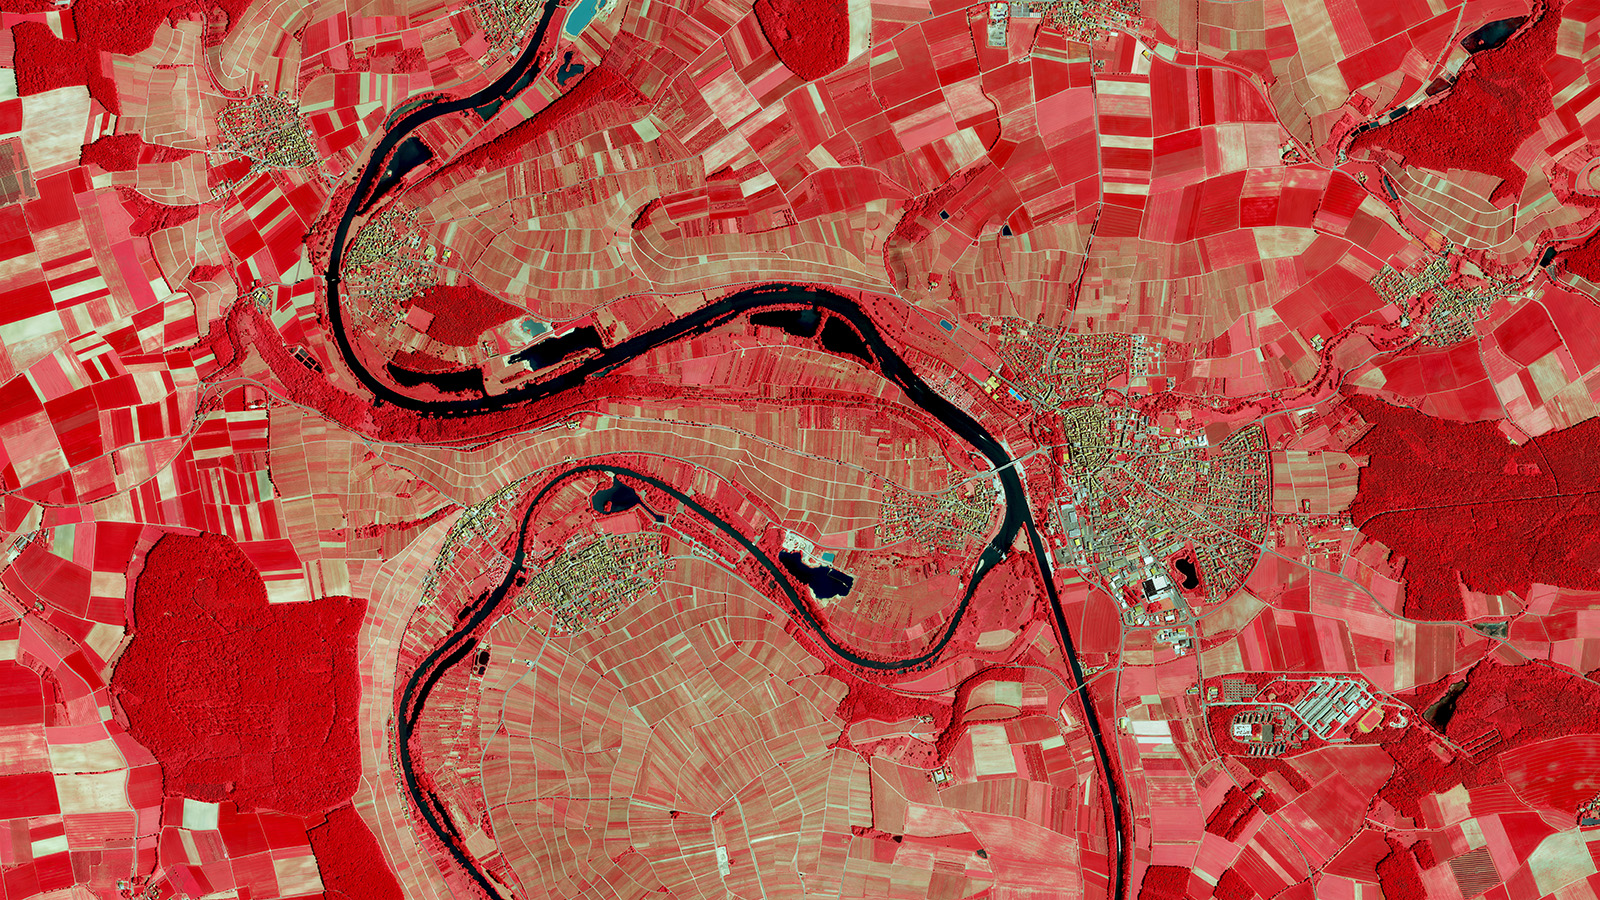 Das CIR-Luftbild zeigt die Vegetation in roter Farbe, das Gewässer ist türkis dargestellt.